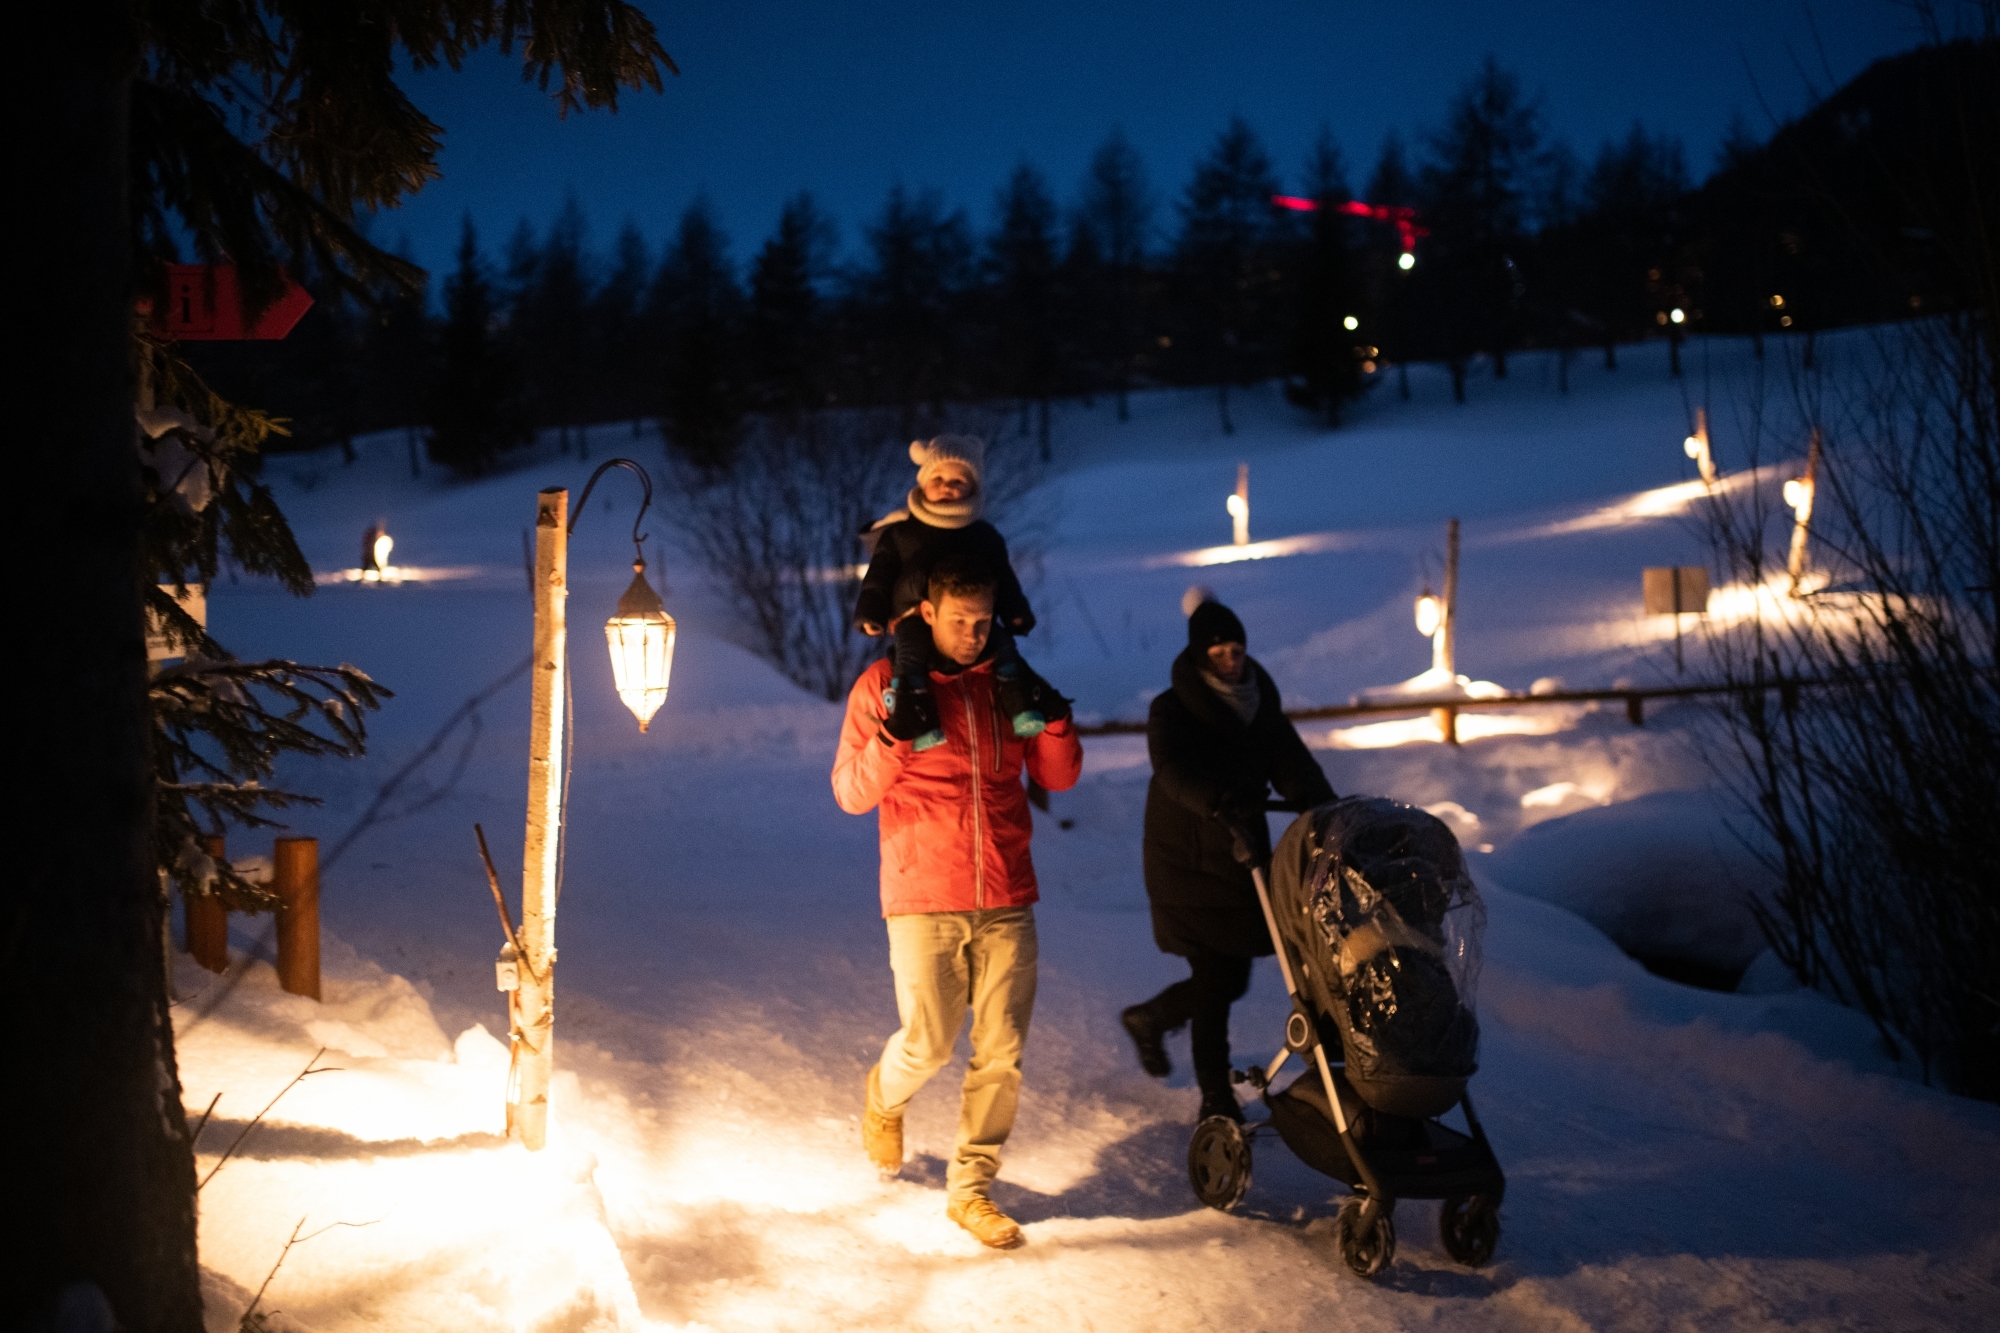 Le Chemin des lanternes, une balade nocturne pour toute la famille dans une ambiance féerique.